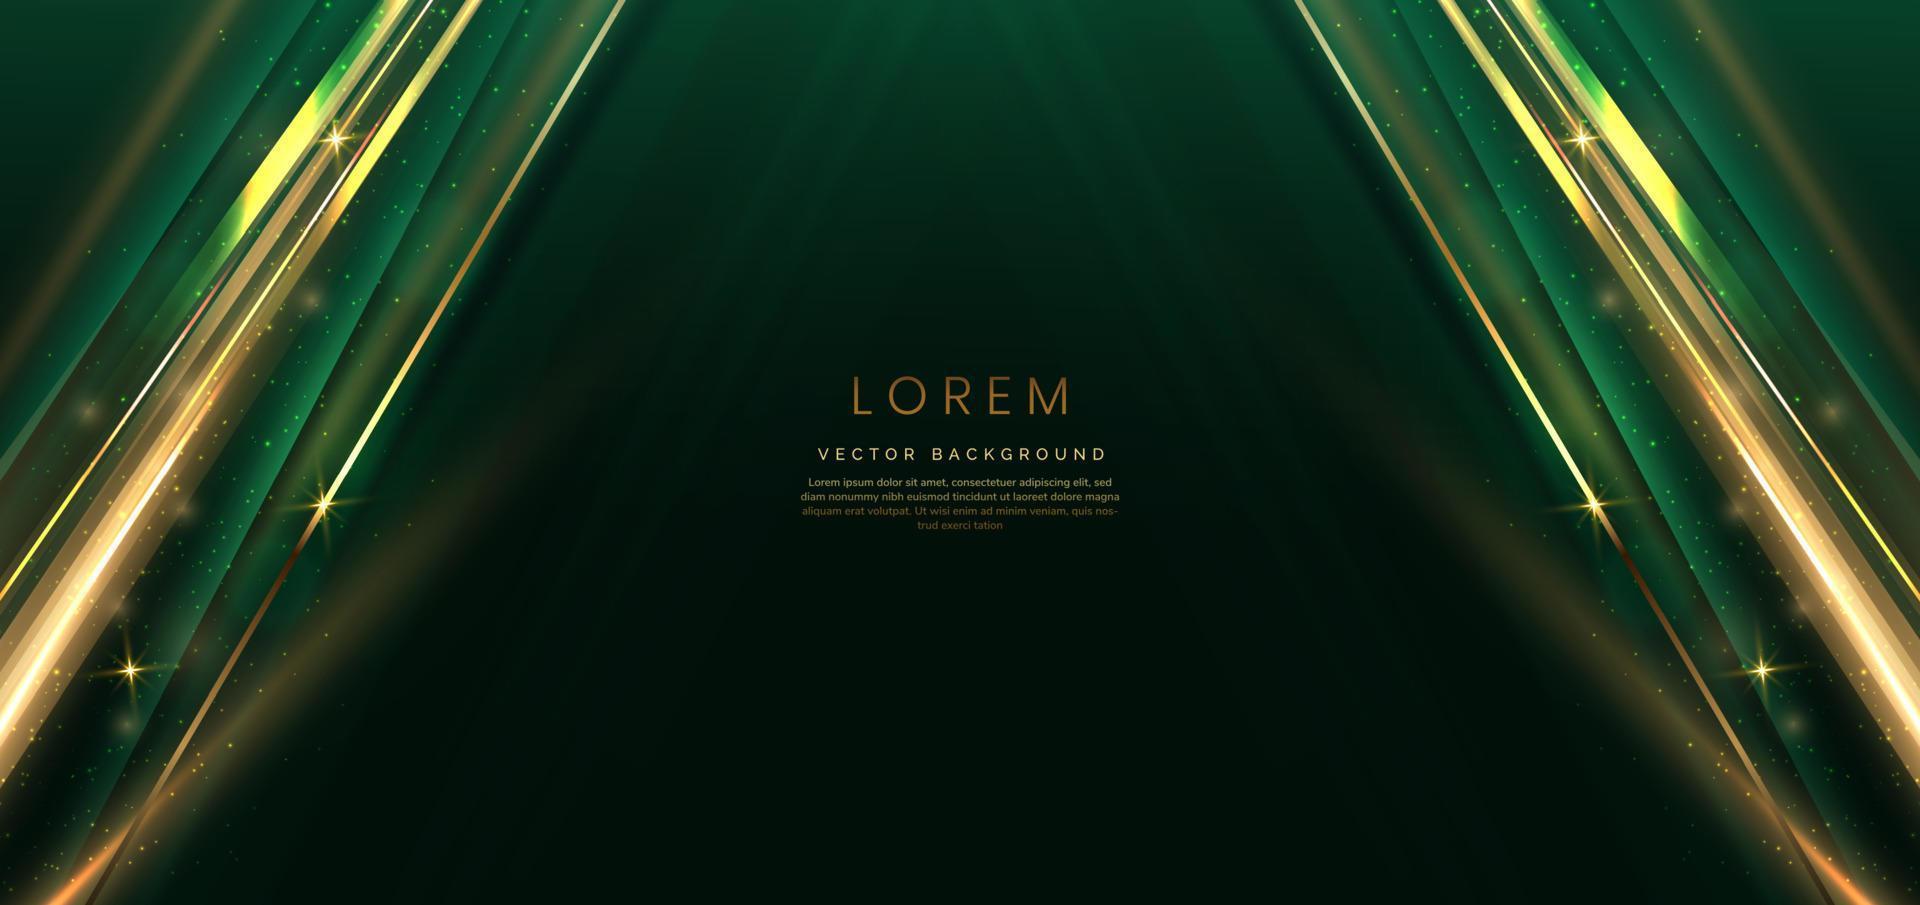 fondo verde oscuro elegante abstracto con línea dorada y brillo de efecto de iluminación. diseño de plantilla de lujo. vector